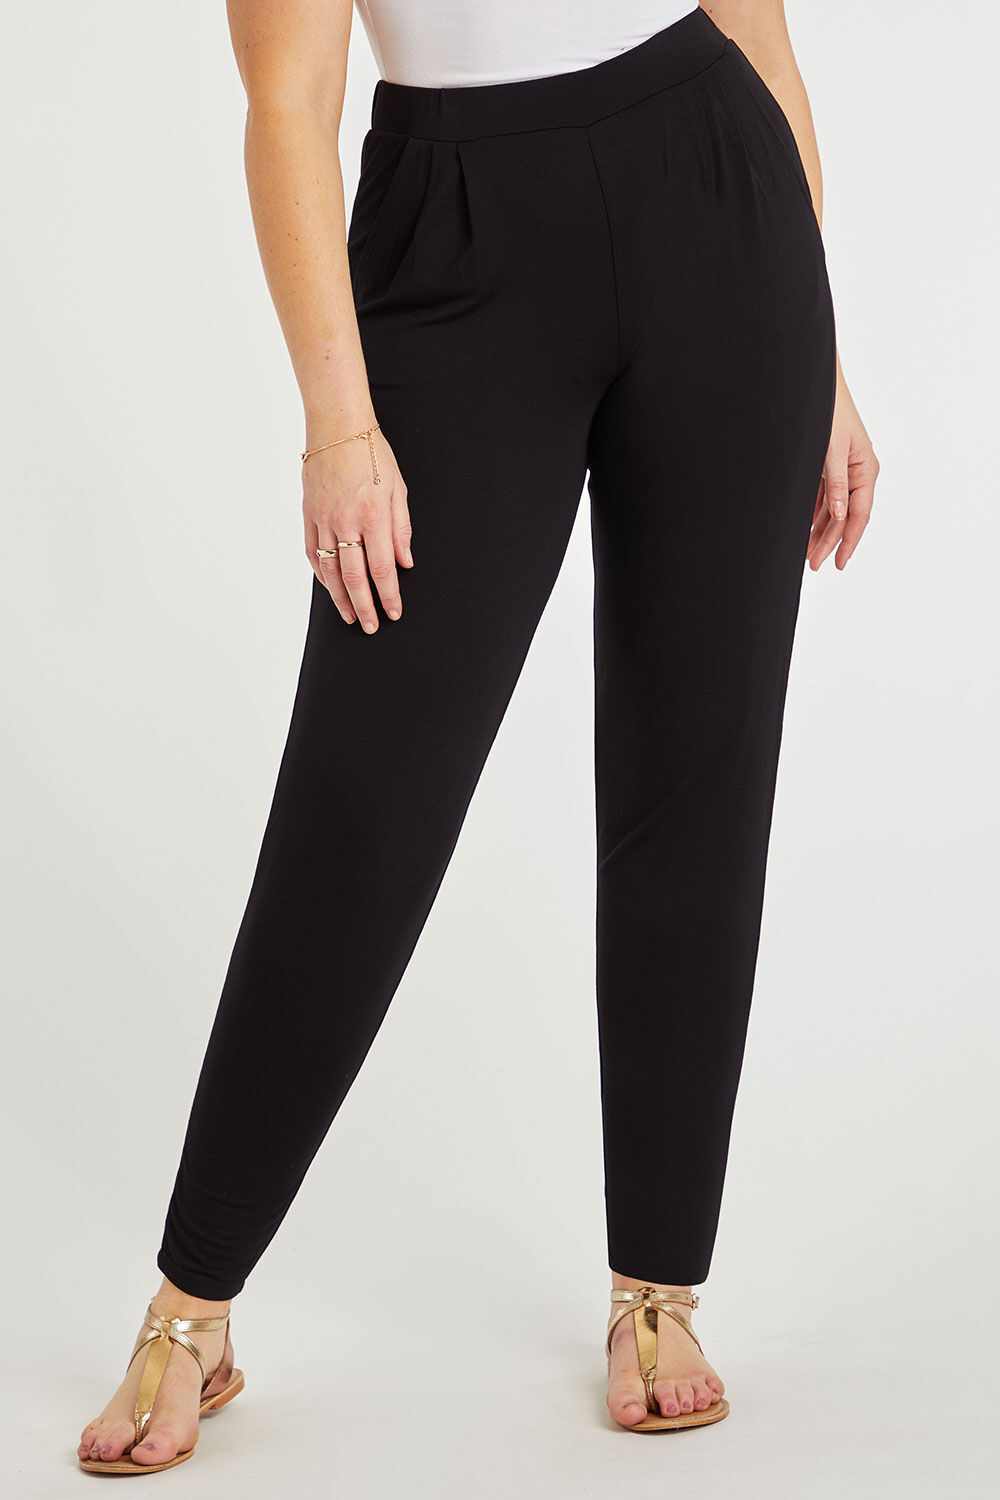 Bonmarche Black Plain Jersey Harem Pants, Size: 12